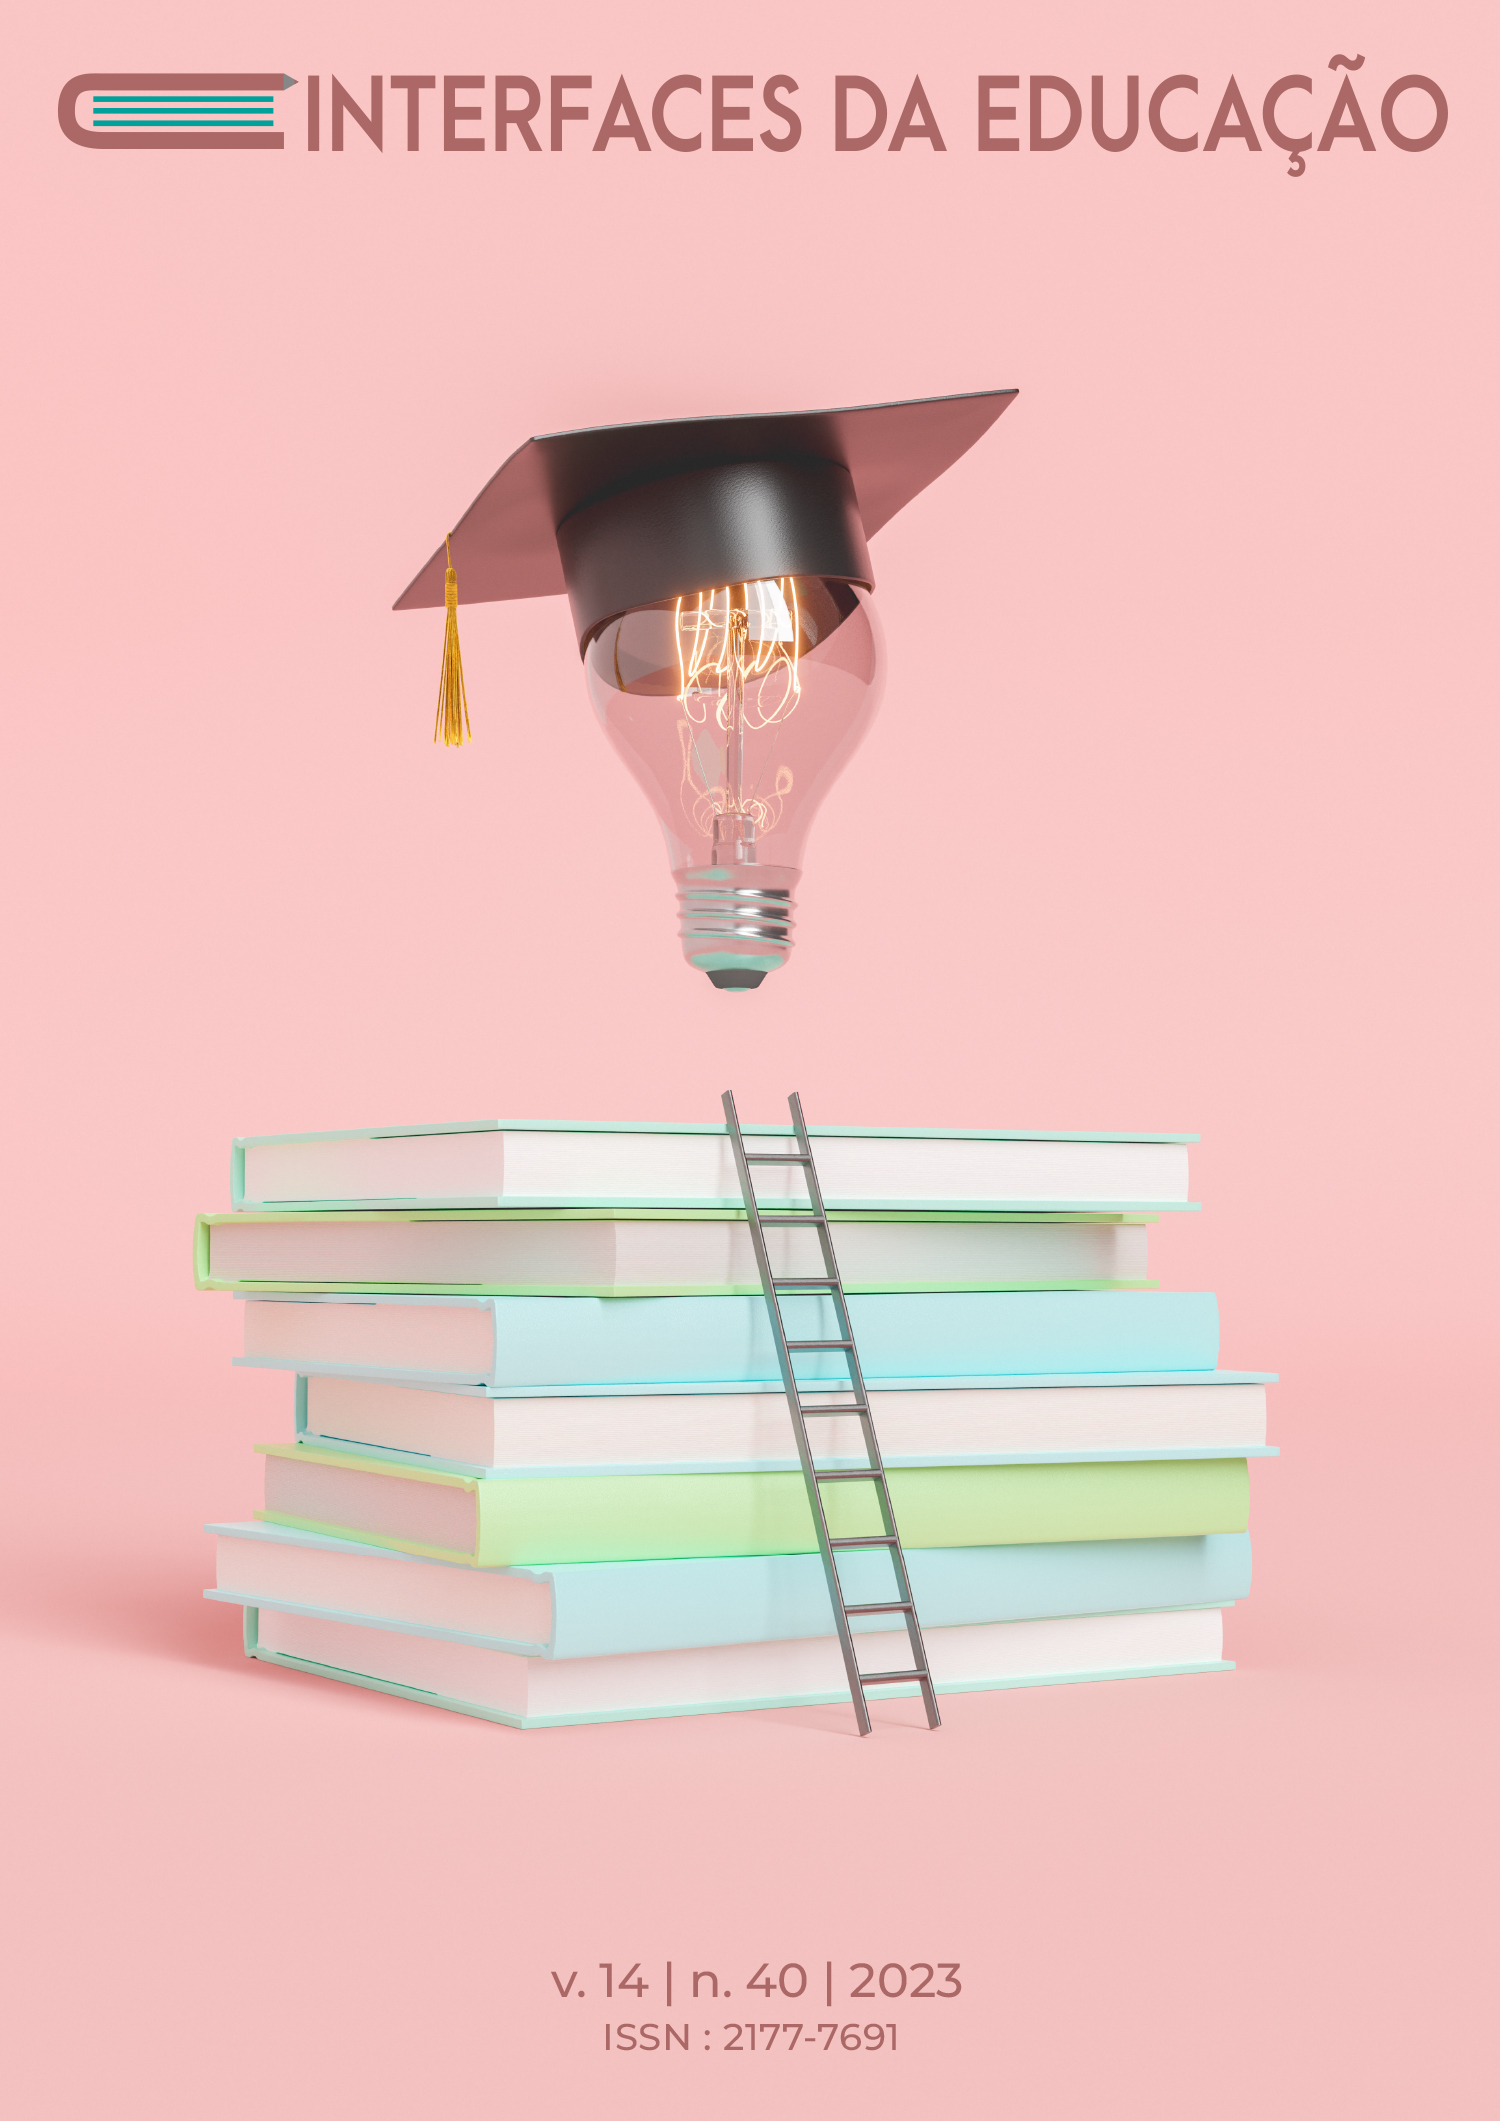 Capa do novo número da revista interfaces da educação com fundo rosa composta por uma ilustração com livros amontoados, uma escada encostada nos livros que possibilita o alcance do conhecimento